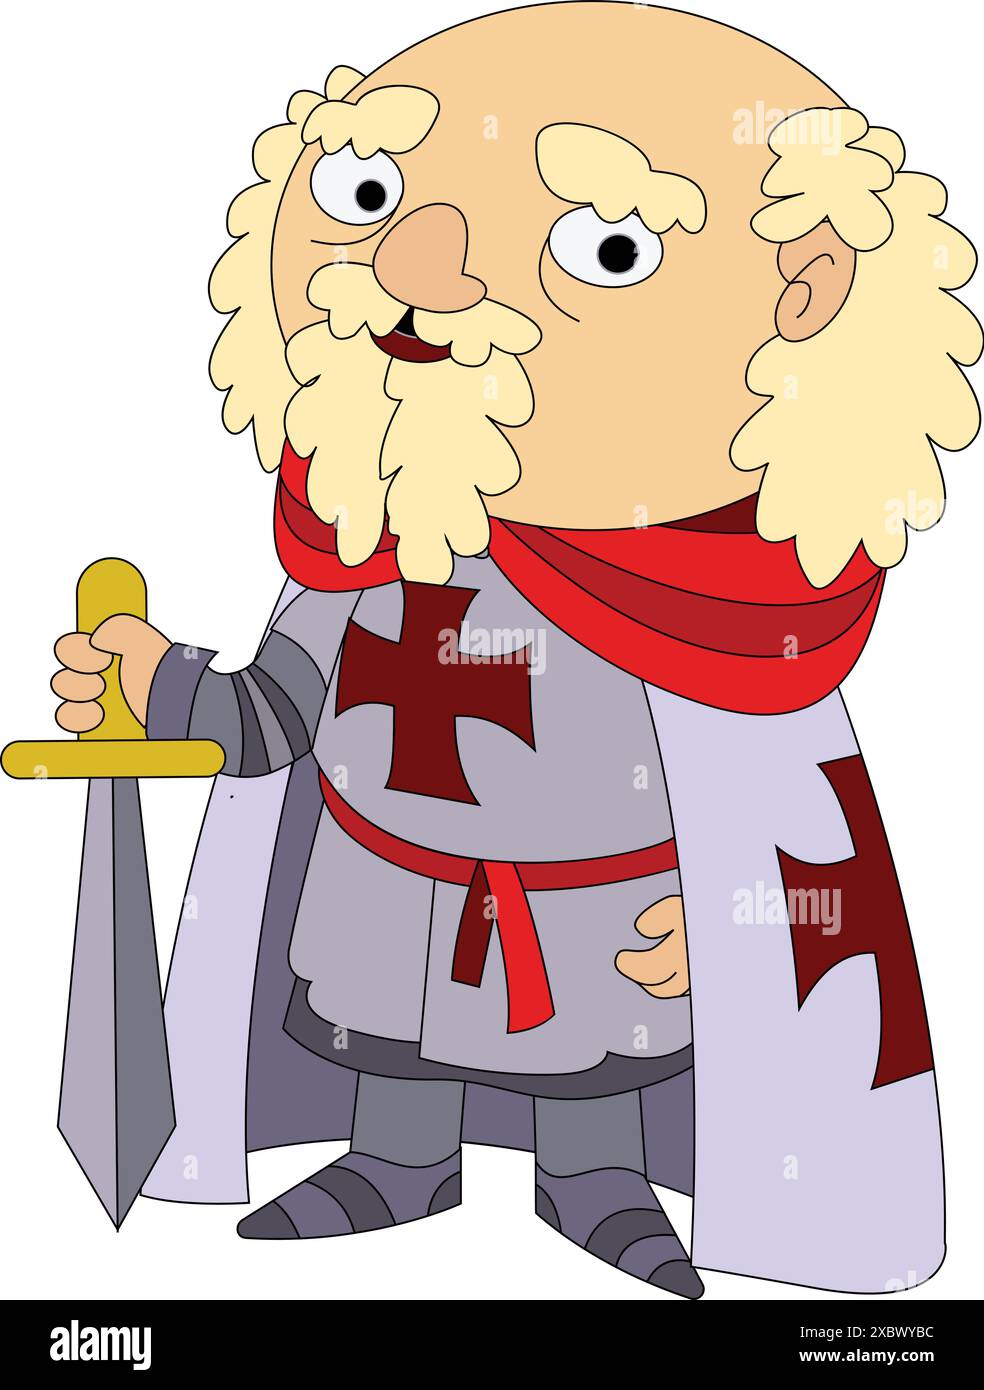 Trickkamerritter mit Schwert, rotes Kreuz, auf weißem Hintergrund Stock Vektor